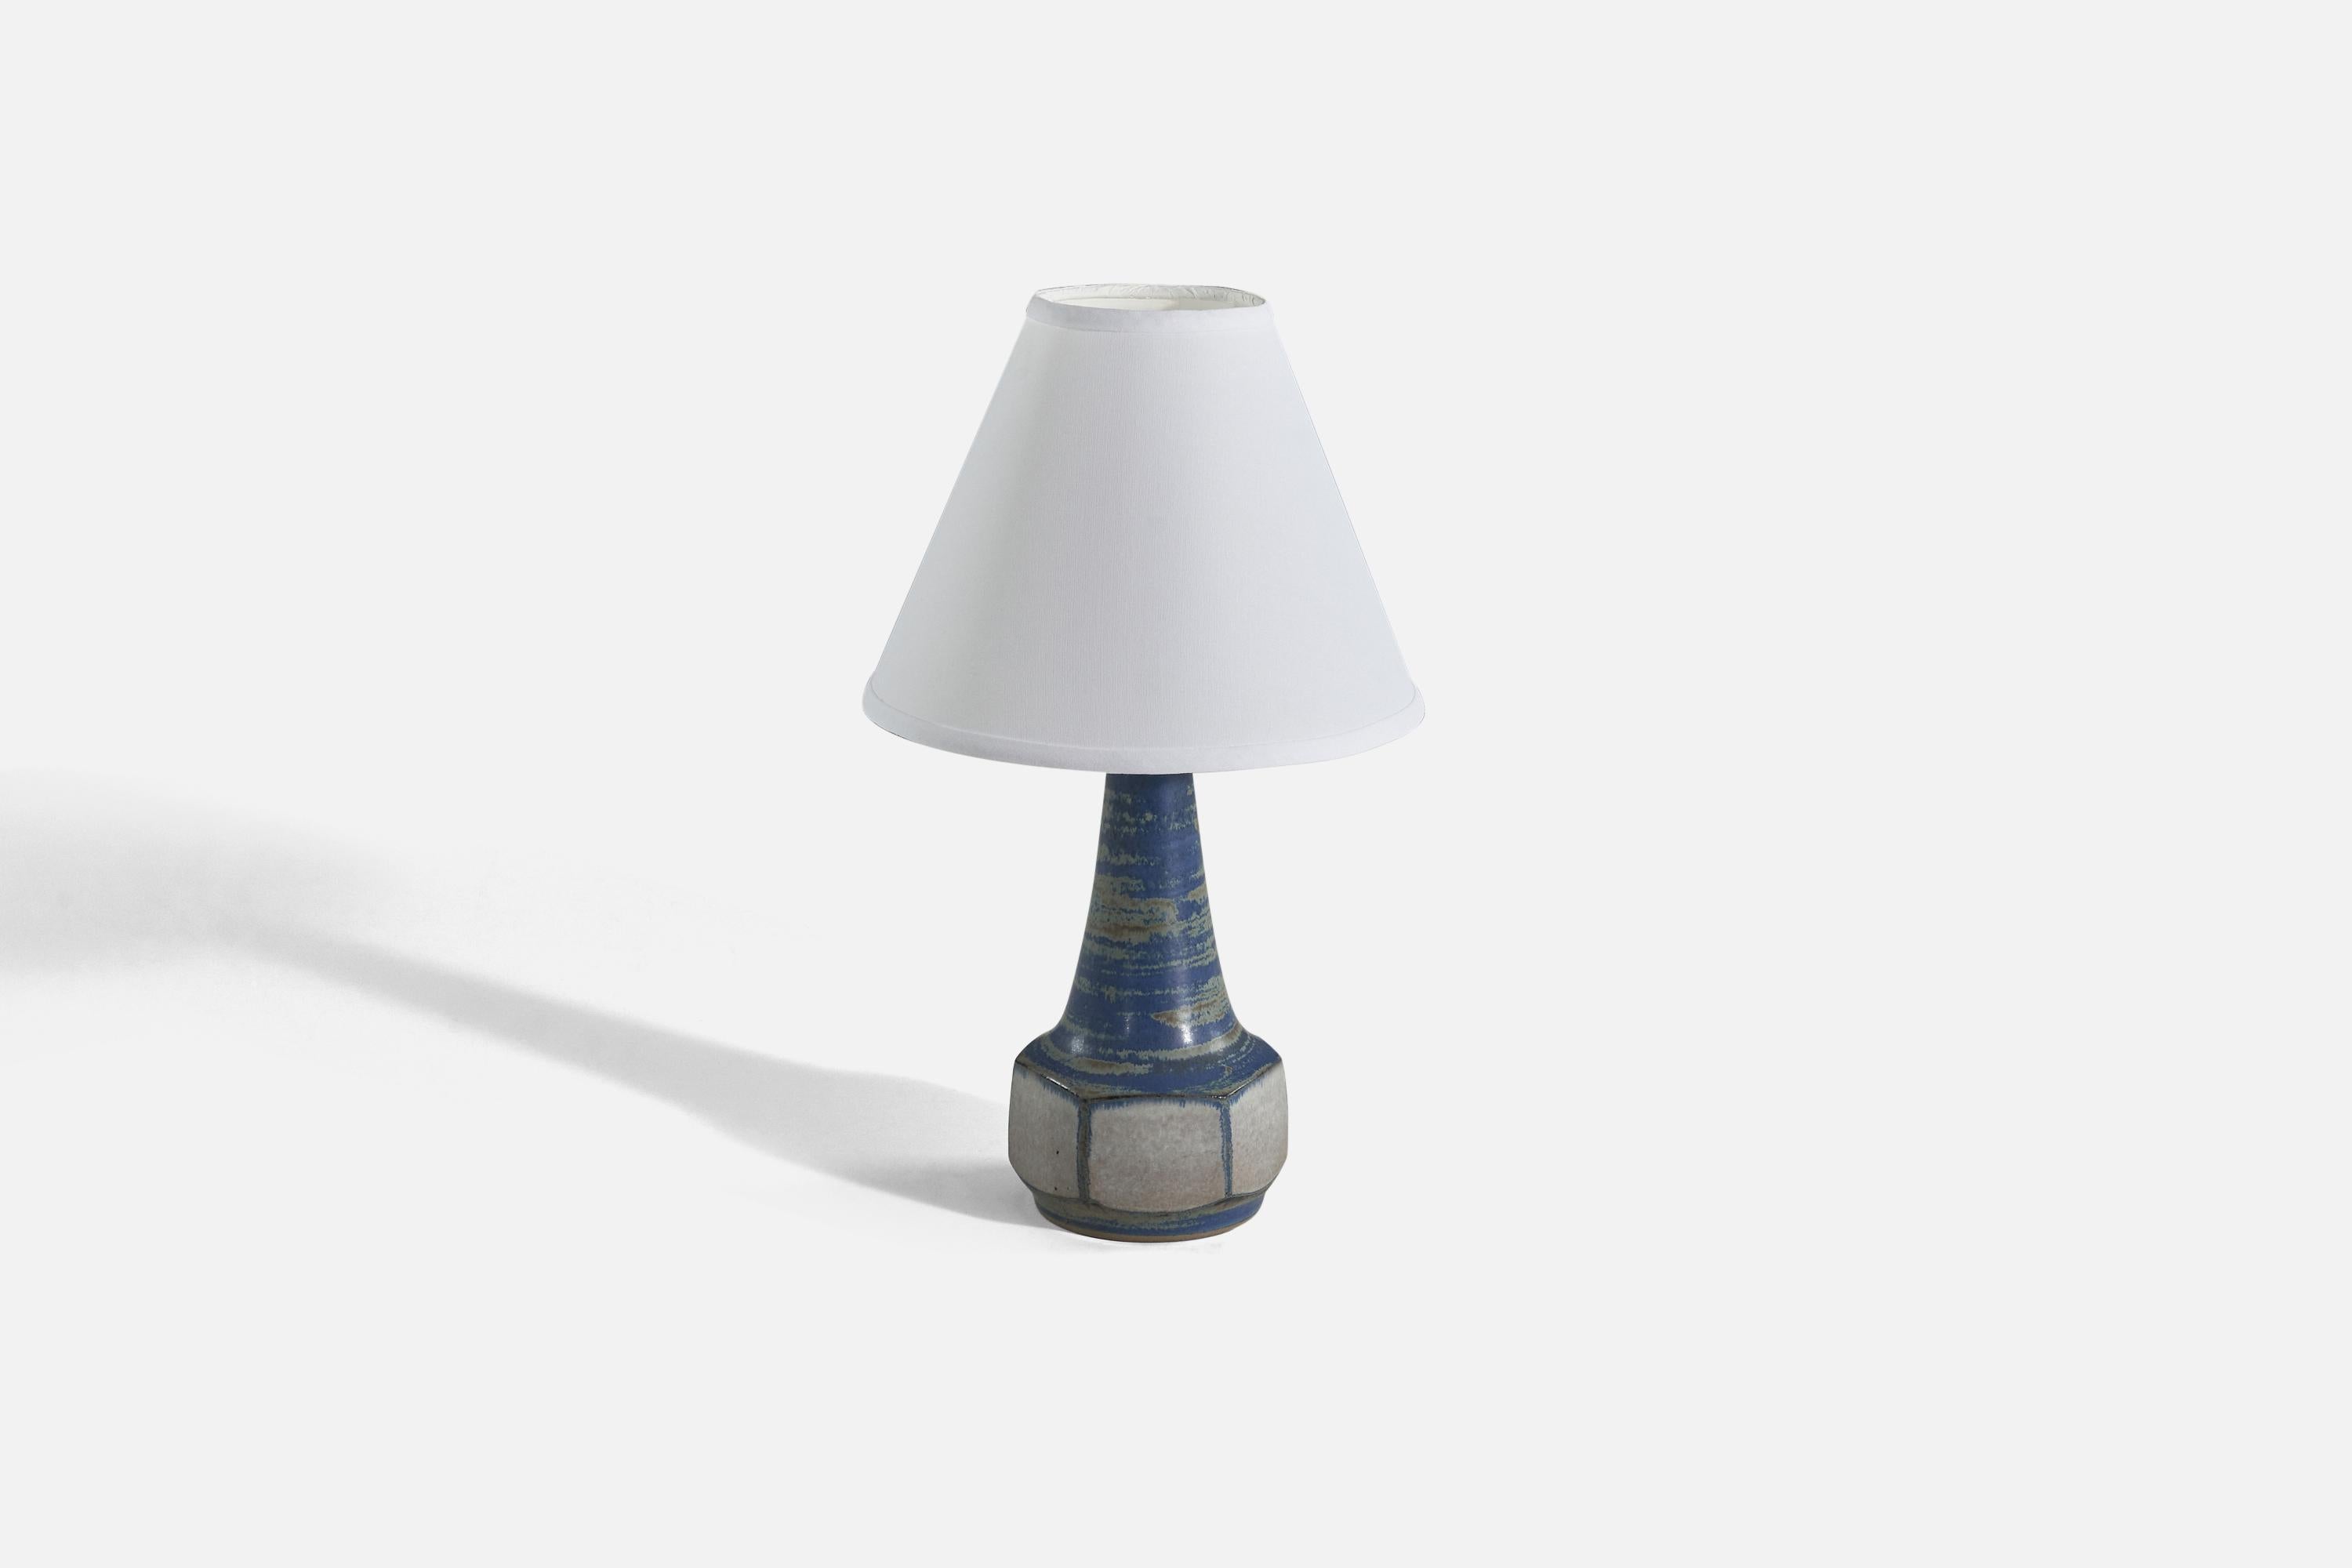 Tischlampe aus blauem und grauem glasiertem Steingut, entworfen von Marianne Starck und hergestellt von Michael Andersen Keramik, Dänemark, 1960er Jahre. 

Verkauft ohne Lampenschirm. 
Abmessungen der Lampe (Zoll) : 11.5 x 5.21 x 4.91 (Höhe x Breite